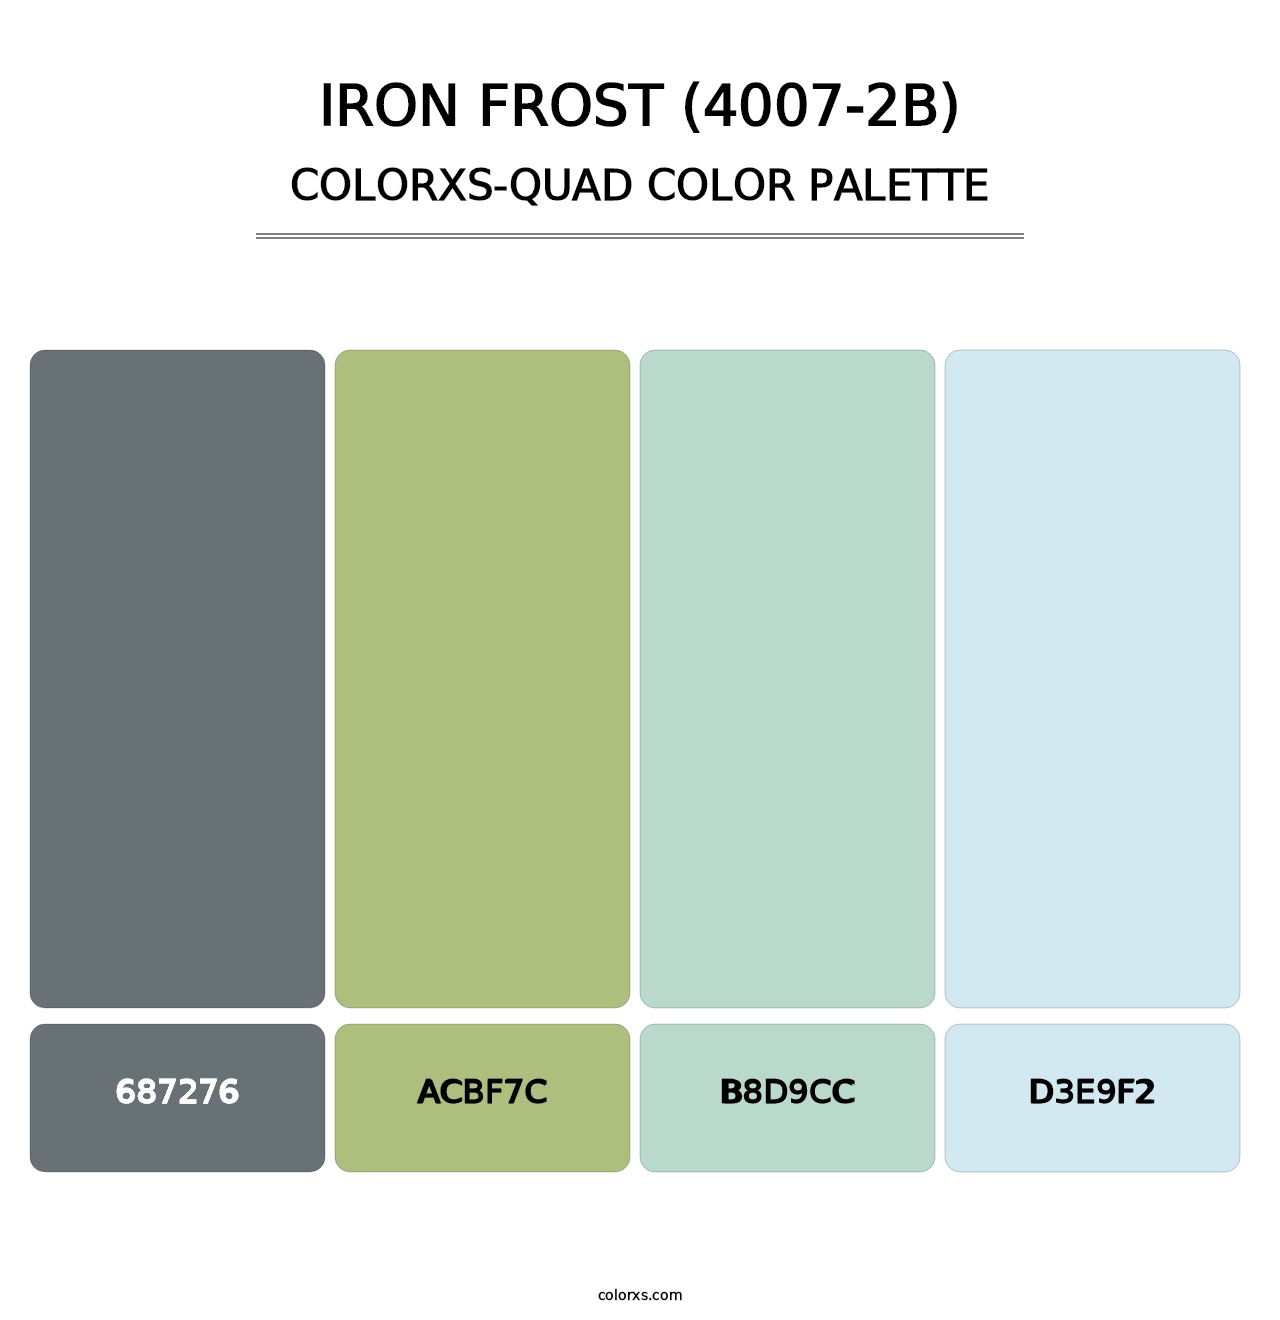 Iron Frost (4007-2B) - Colorxs Quad Palette